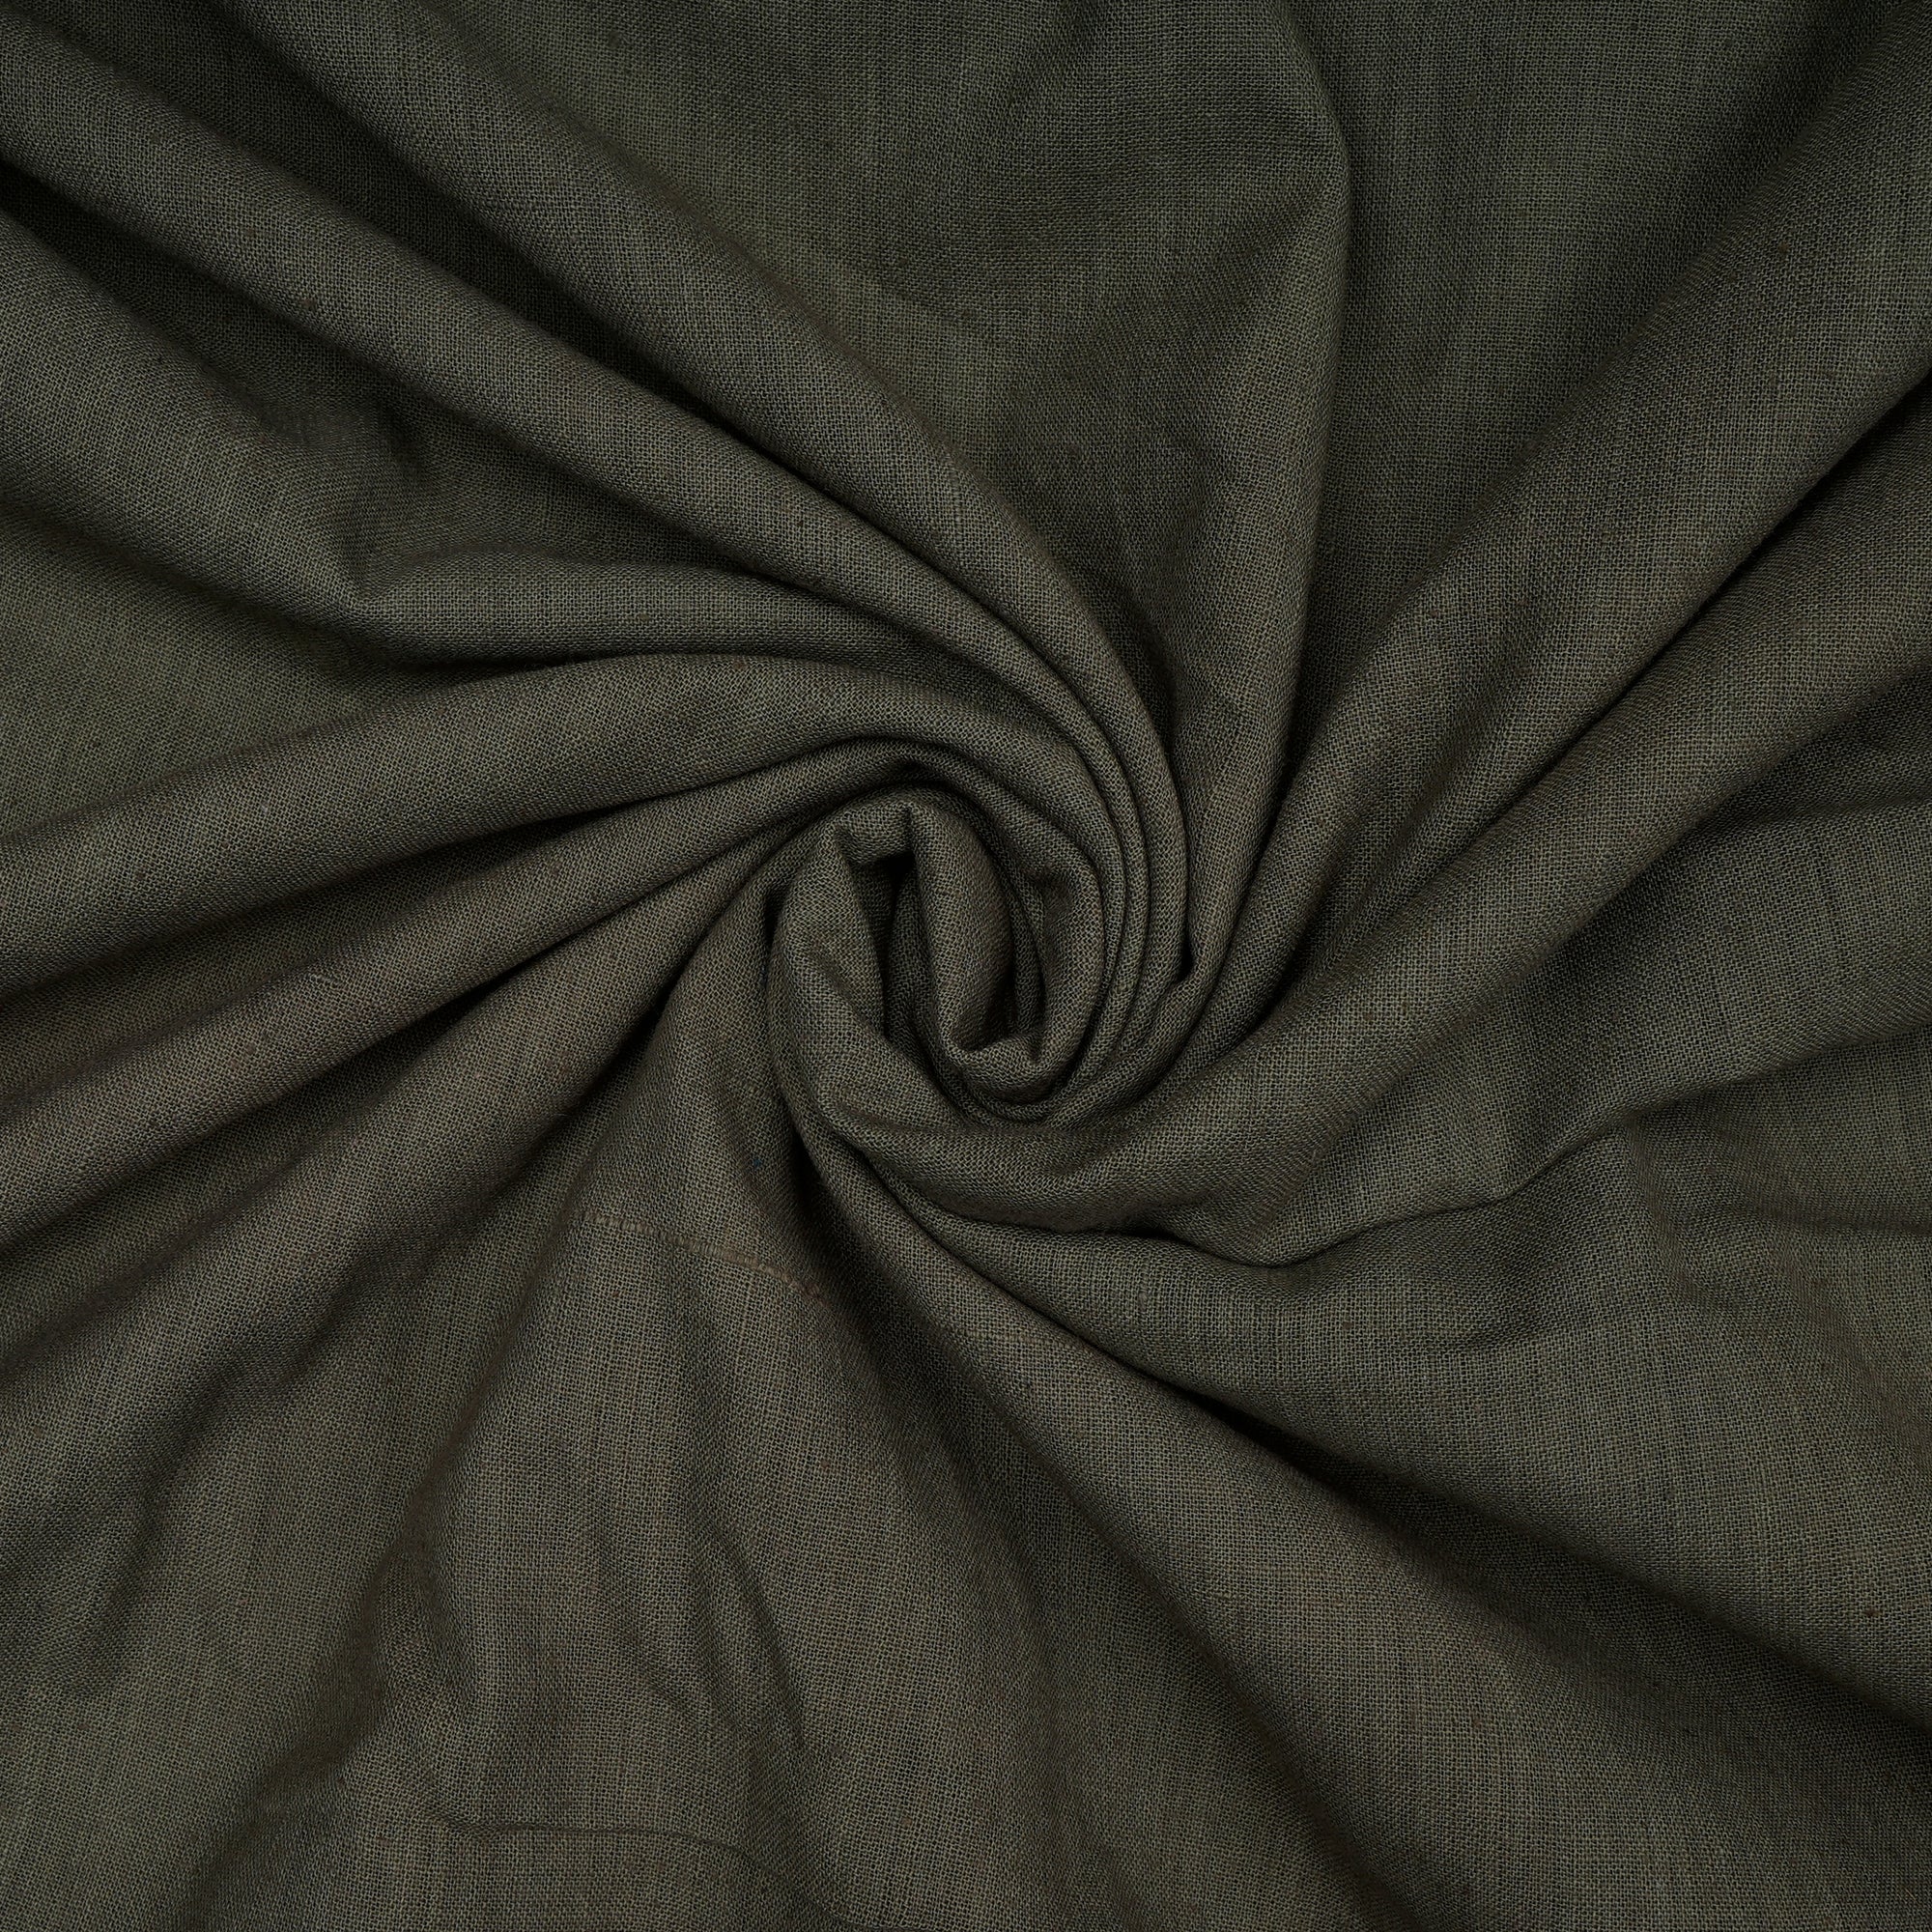 Deep Lichen Green 40's Count Piece Dyed Handspun Handwoven Cotton Fabric